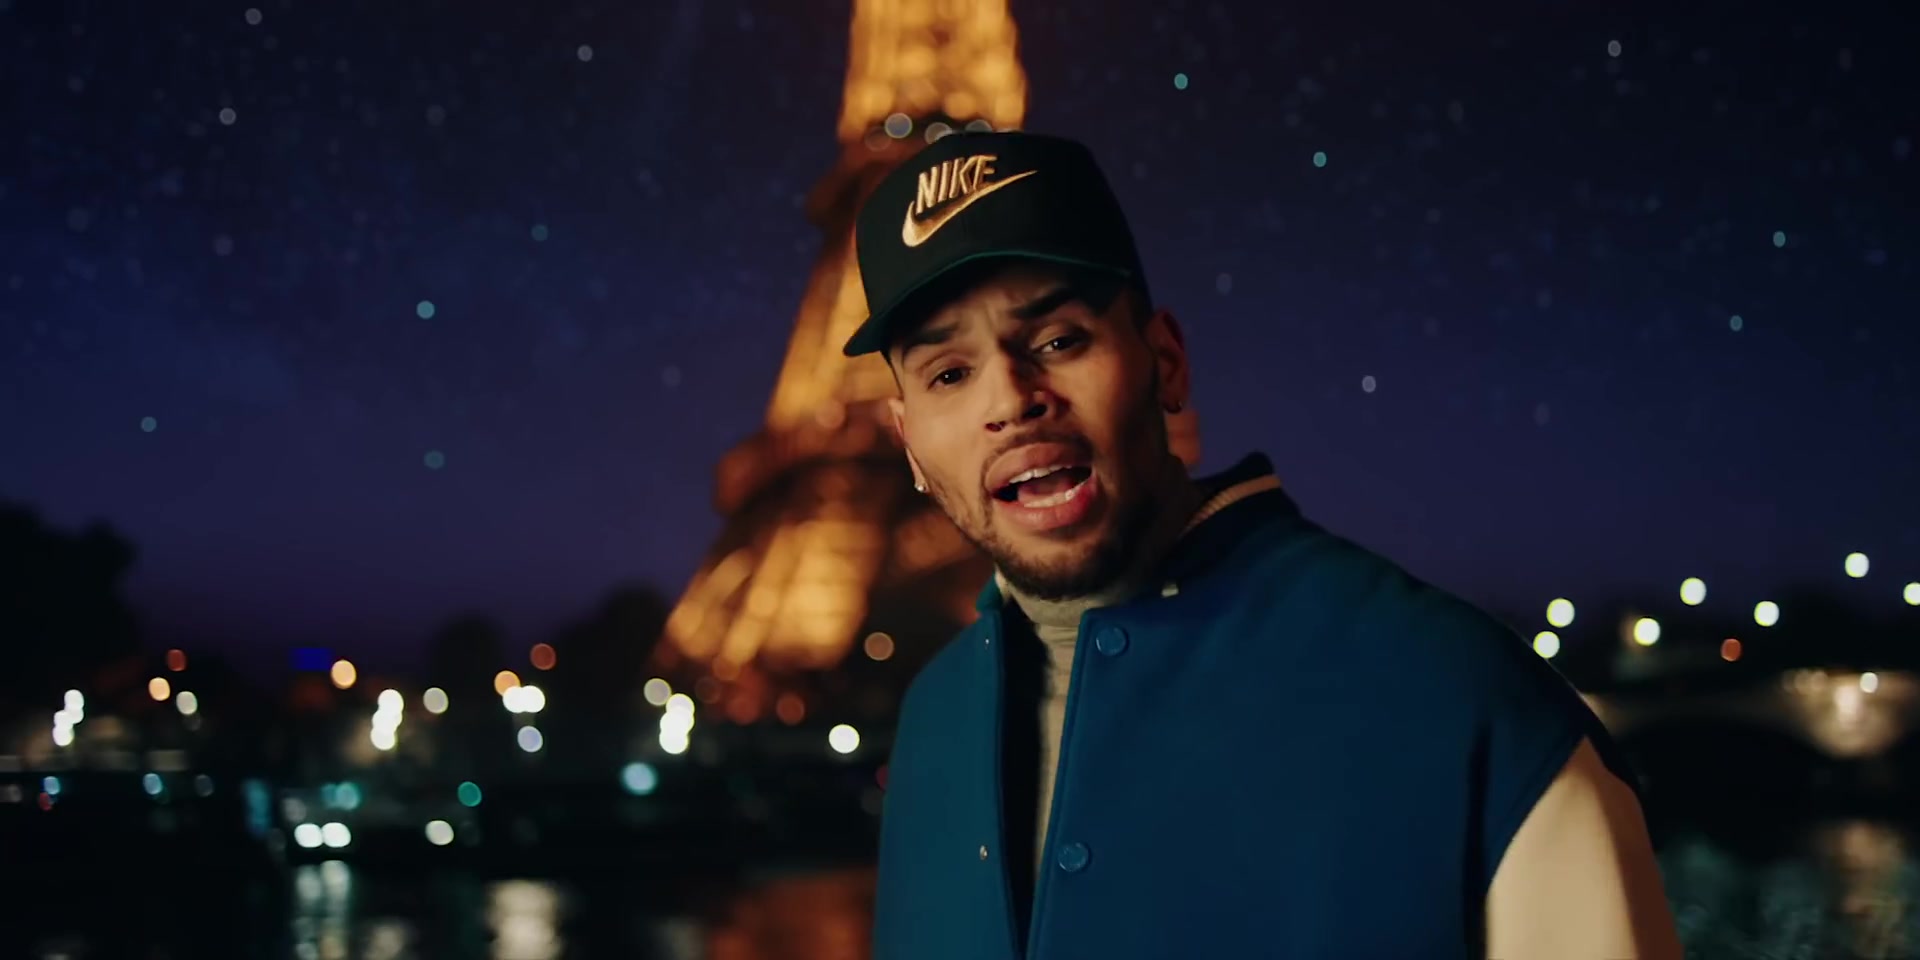 Chris Brown in cap. Chris Brown в синей кепке. Love more Cris Brown. Chris Brown hats.